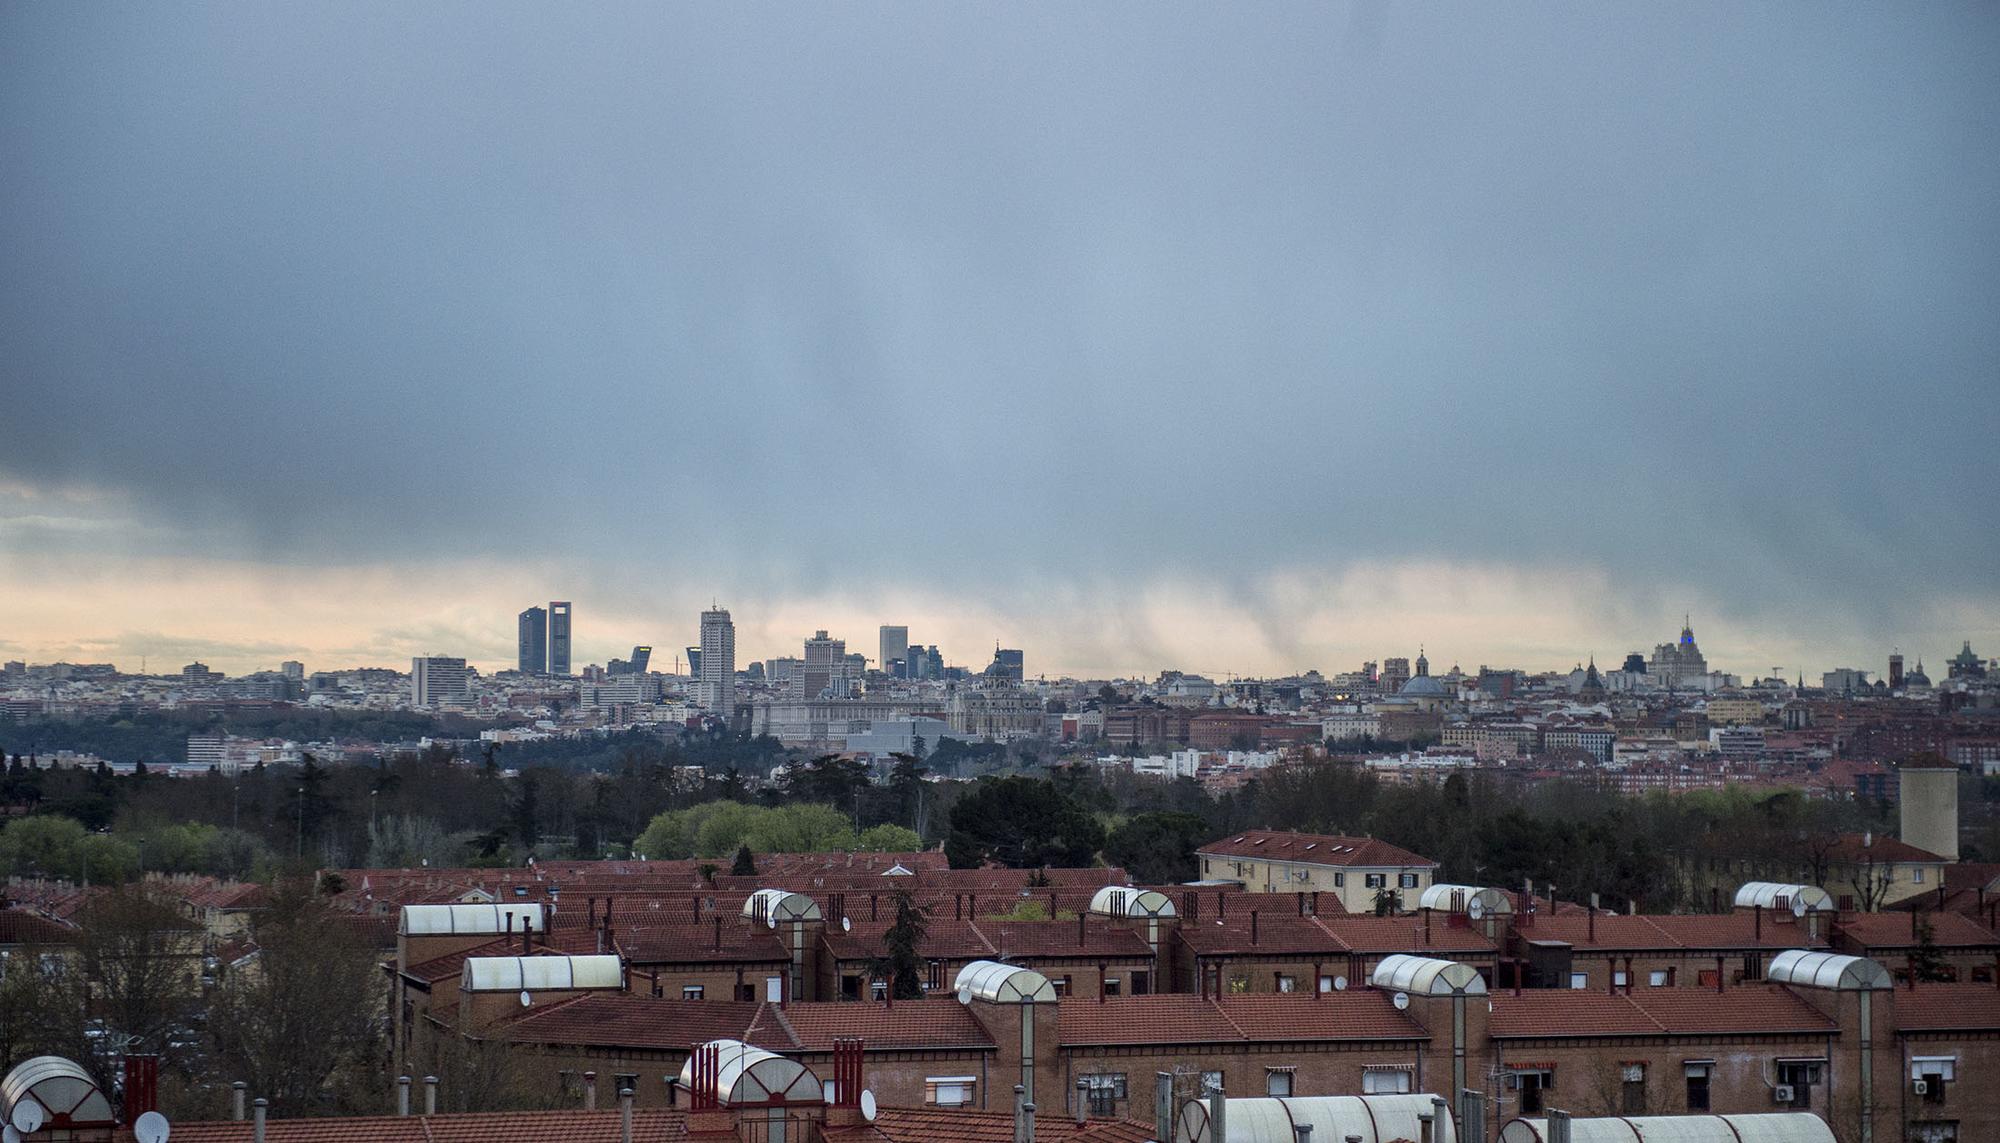 Una tormenta cae sobre el centro de Madrid, vista desde las azoteas de Carabanchel